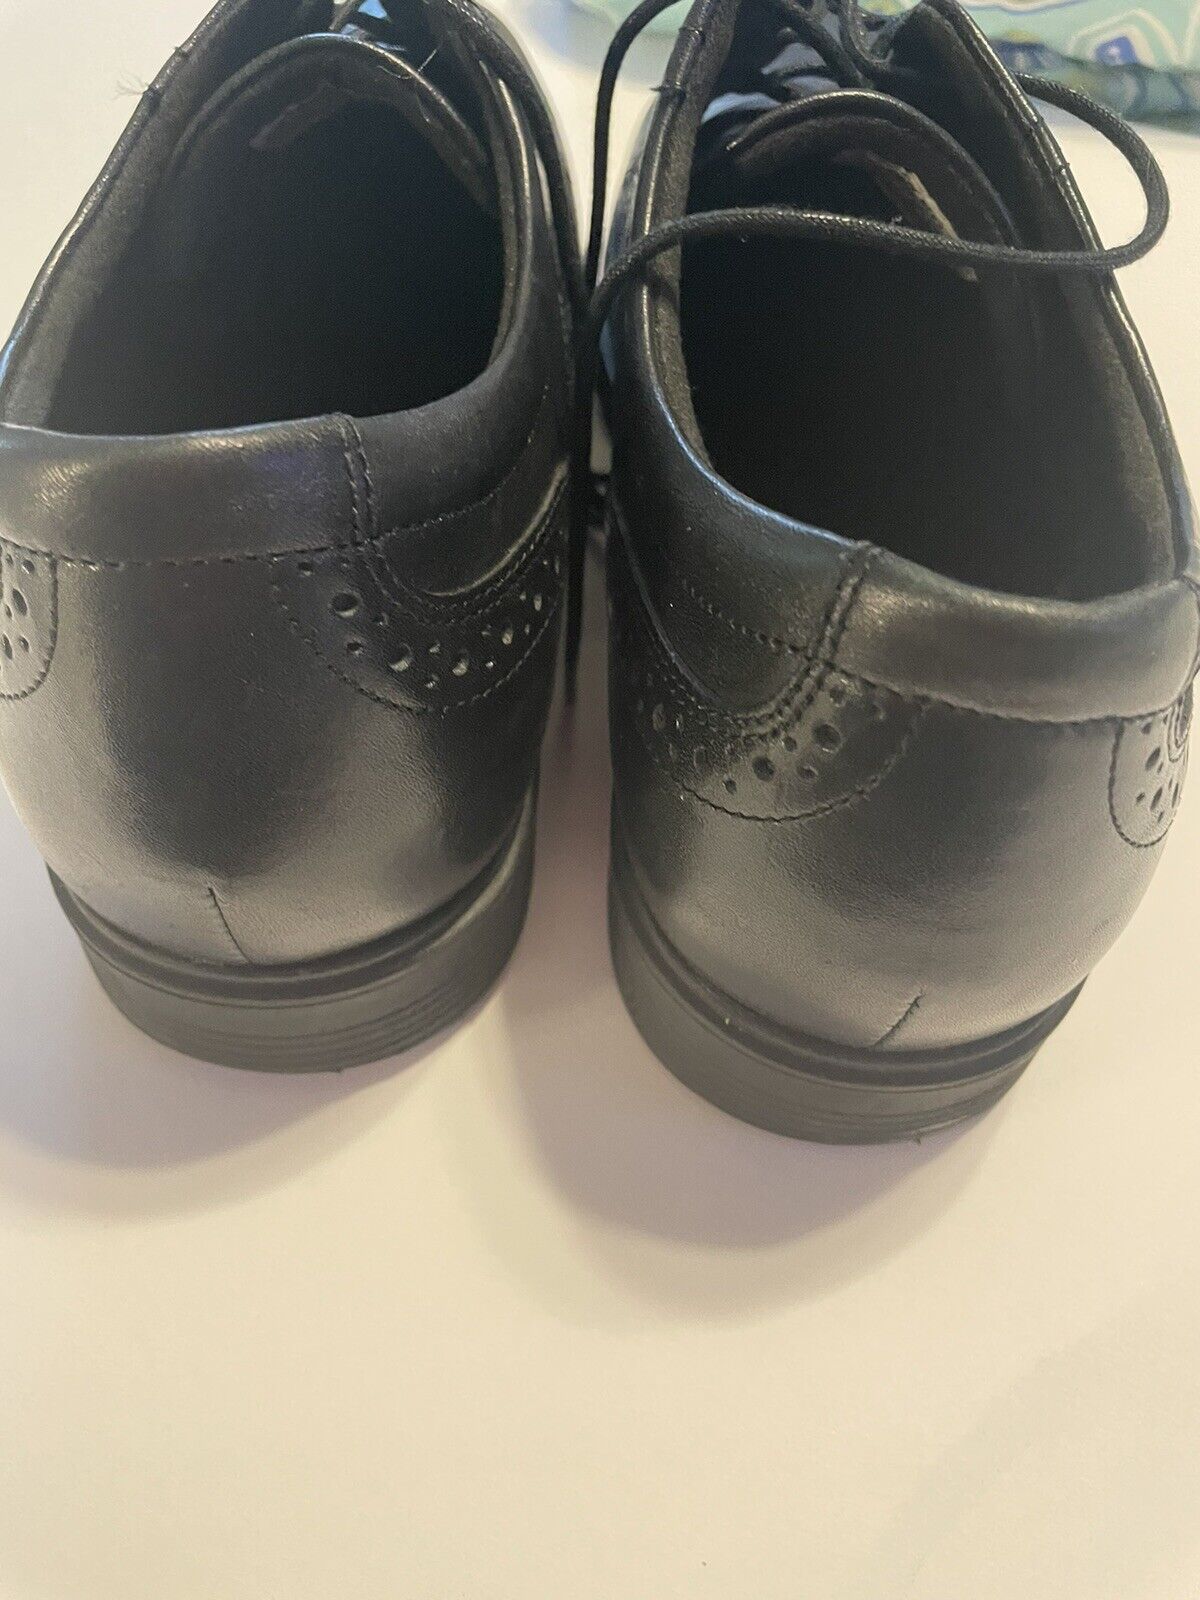 rockport mens shoes 11.5 Black - image 2